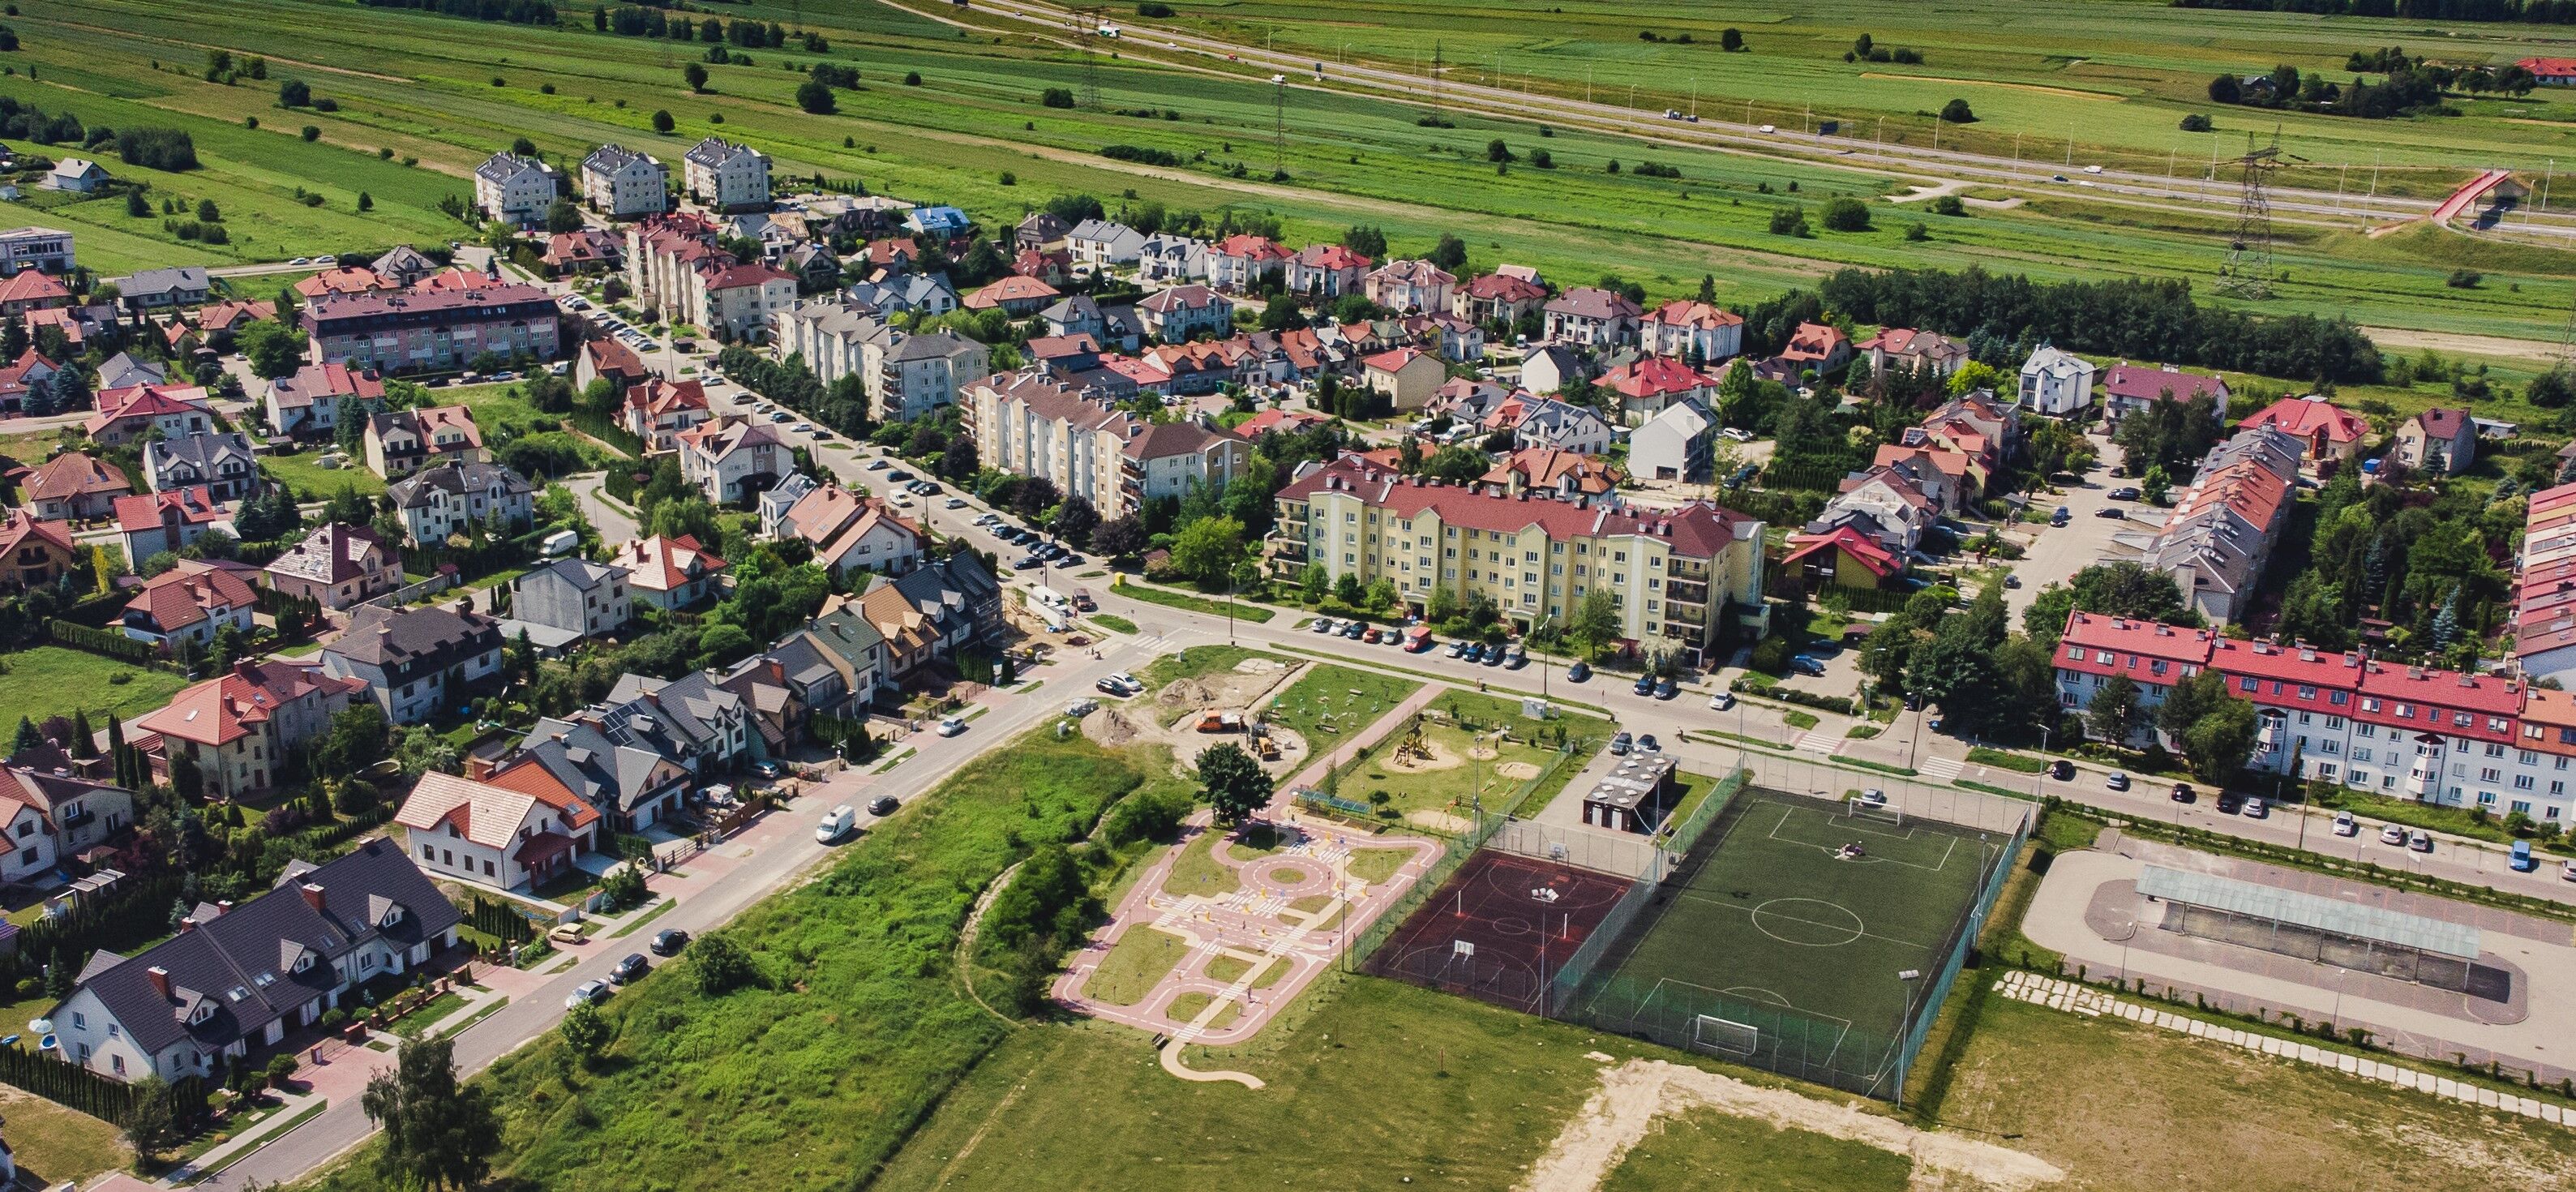 Widok z lotu ptaka na przedmieścia: mieszane budownictwo, boisko sportowe, zieleń i ulice.